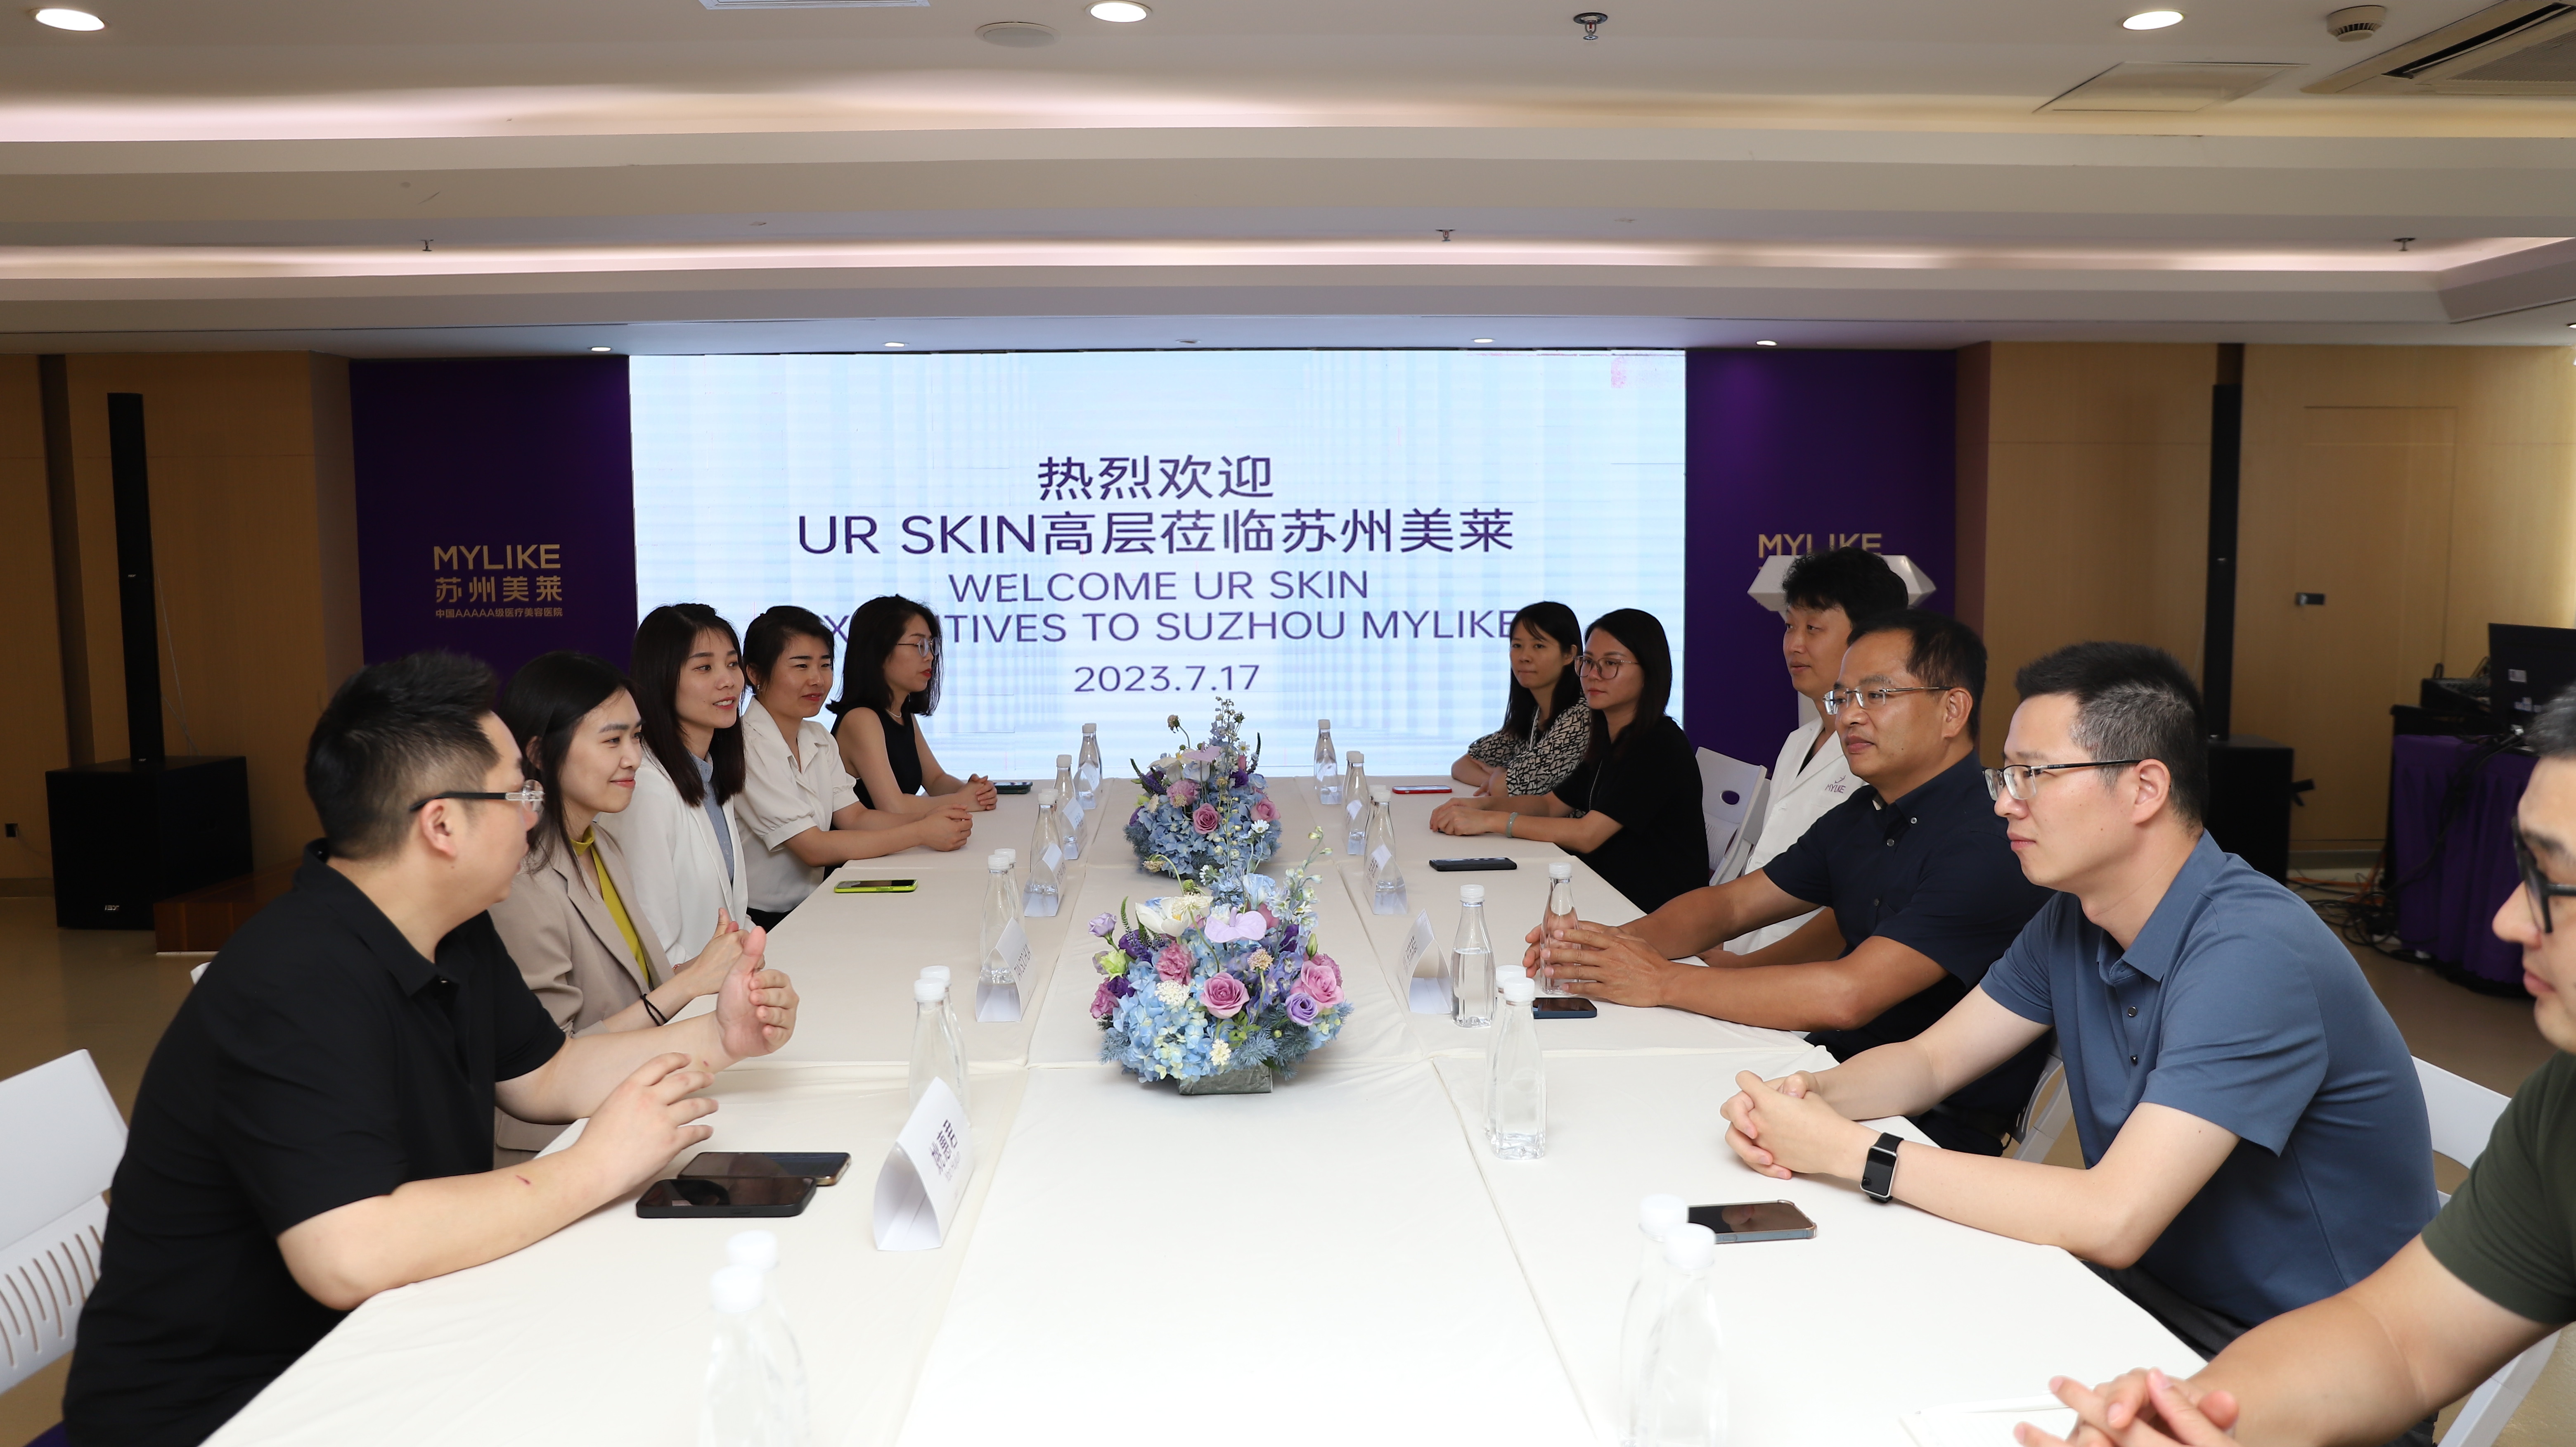 გაცვლა UR SKIN Group (მალაიზია) და Meilai Group (Suzhou) შორის